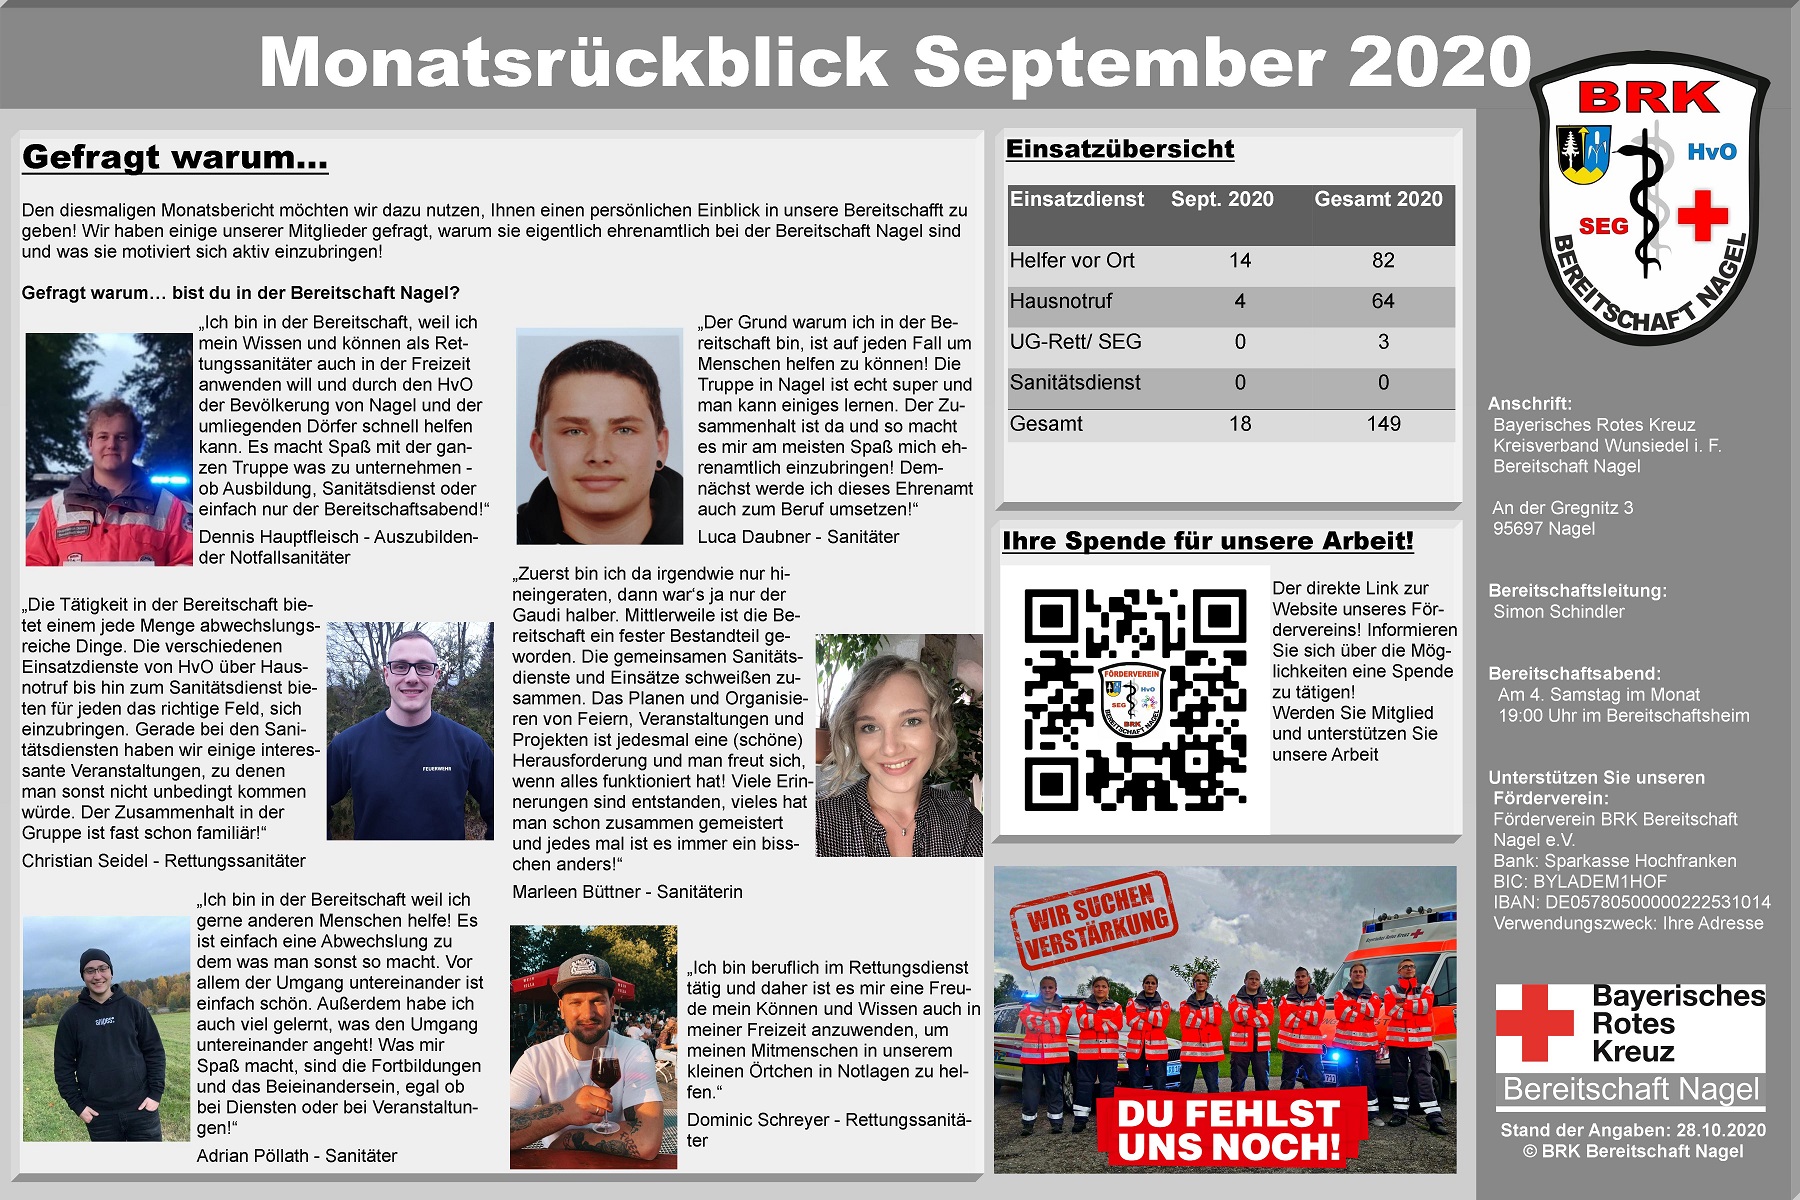 9_-_Plakat_Monatsrckblick_September_2020.jpg